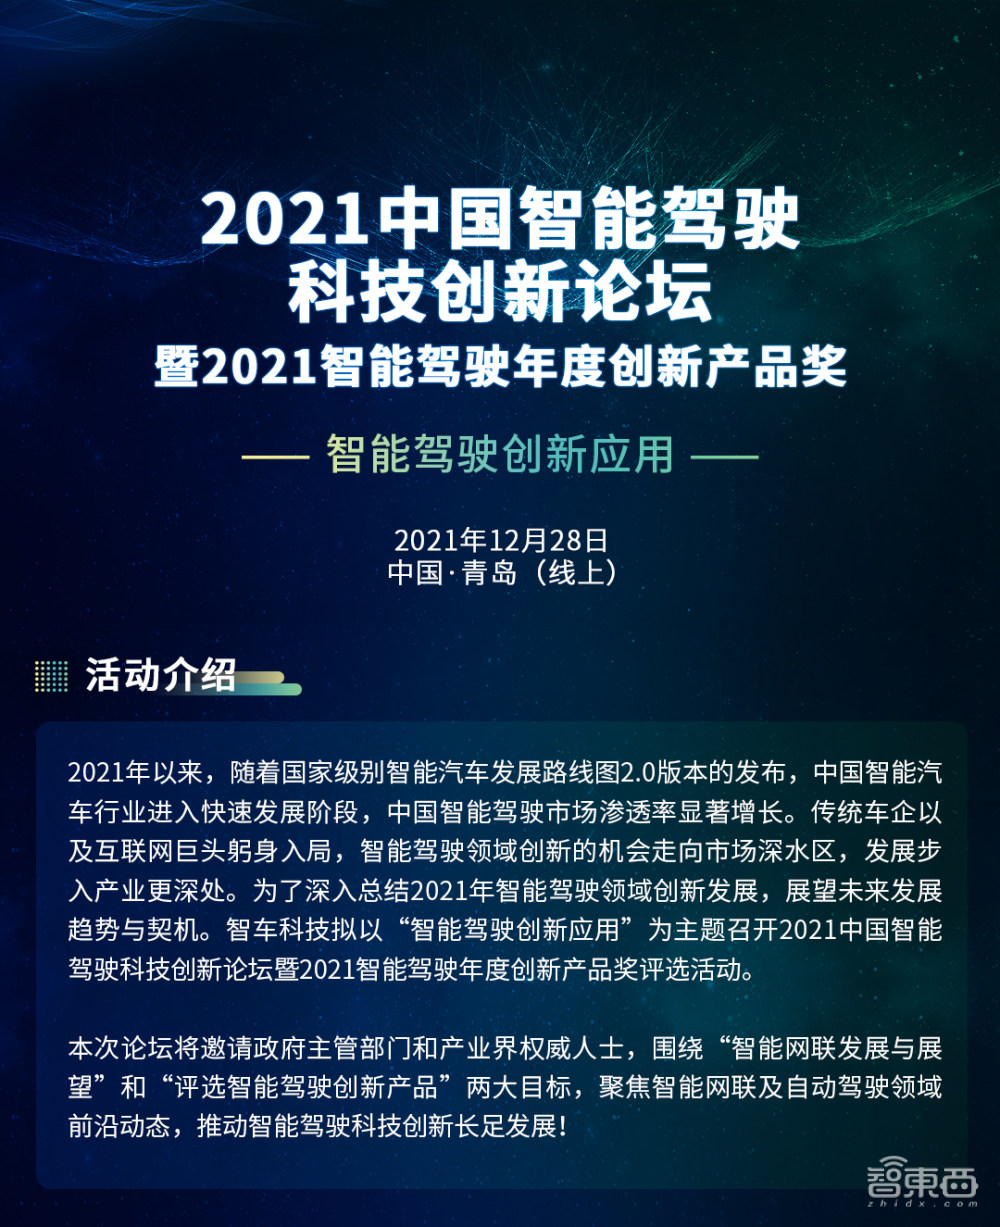 2021中国智能驾驶科技创新论坛将于本月28日举行